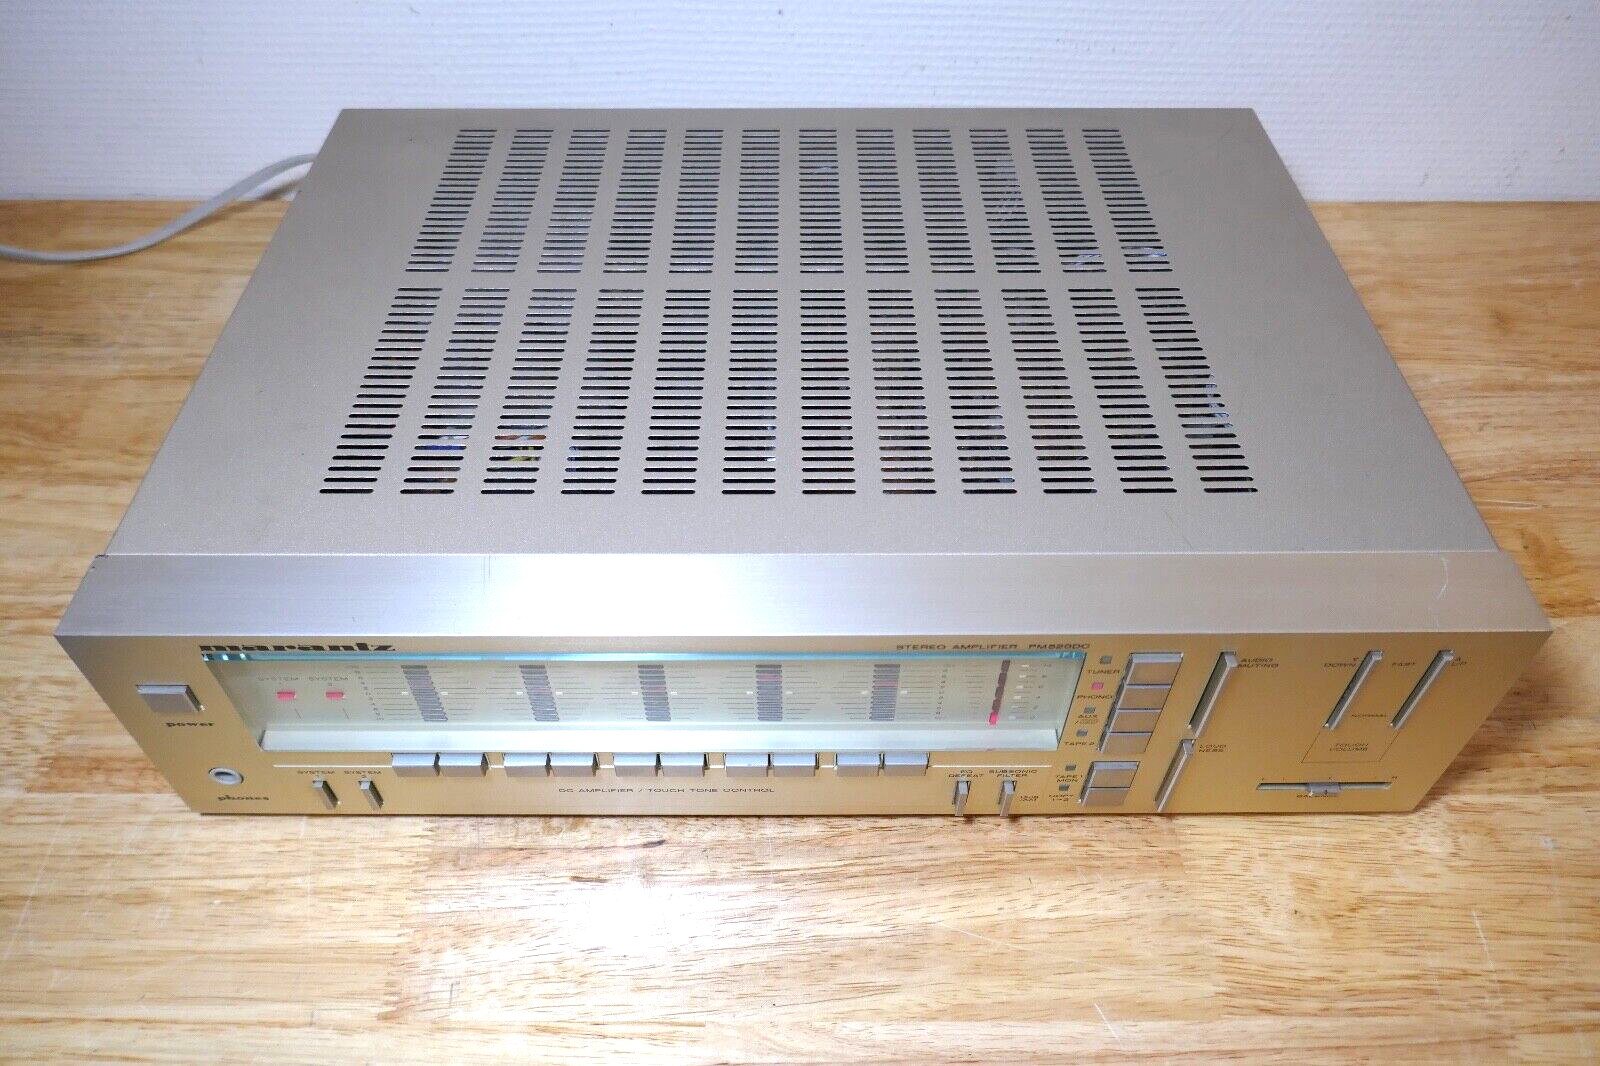 amplificateur amplifier marantz PM520DC vintage occasion